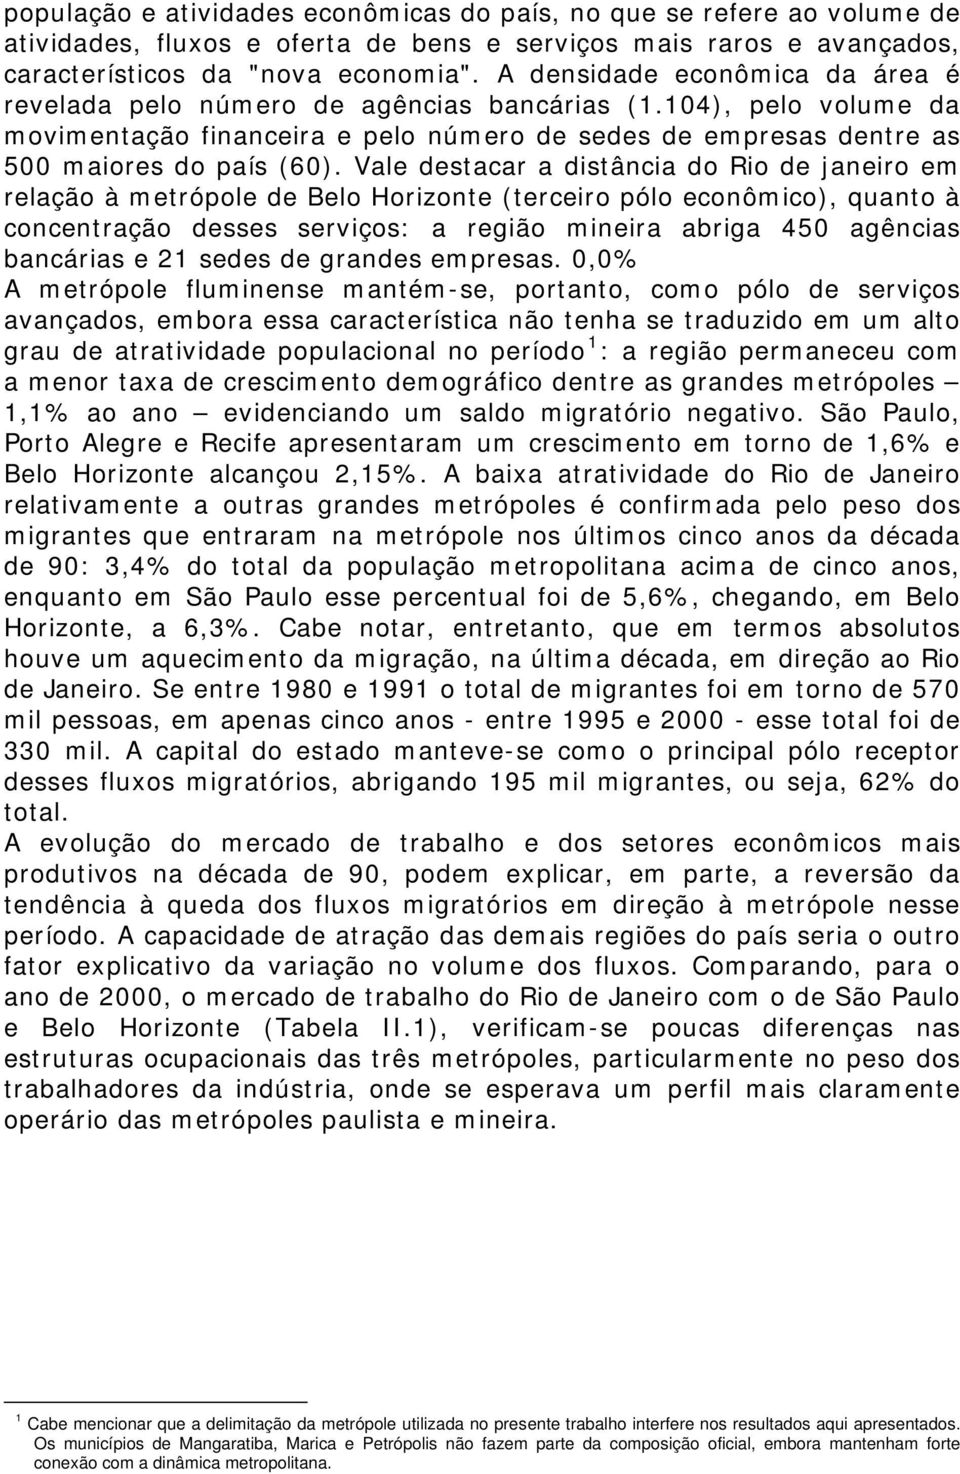 Vale destacar a distância do Rio de janeiro em relação à metrópole de Belo Horizonte (terceiro pólo econômico), quanto à concentração desses serviços: a região mineira abriga 450 agências bancárias e